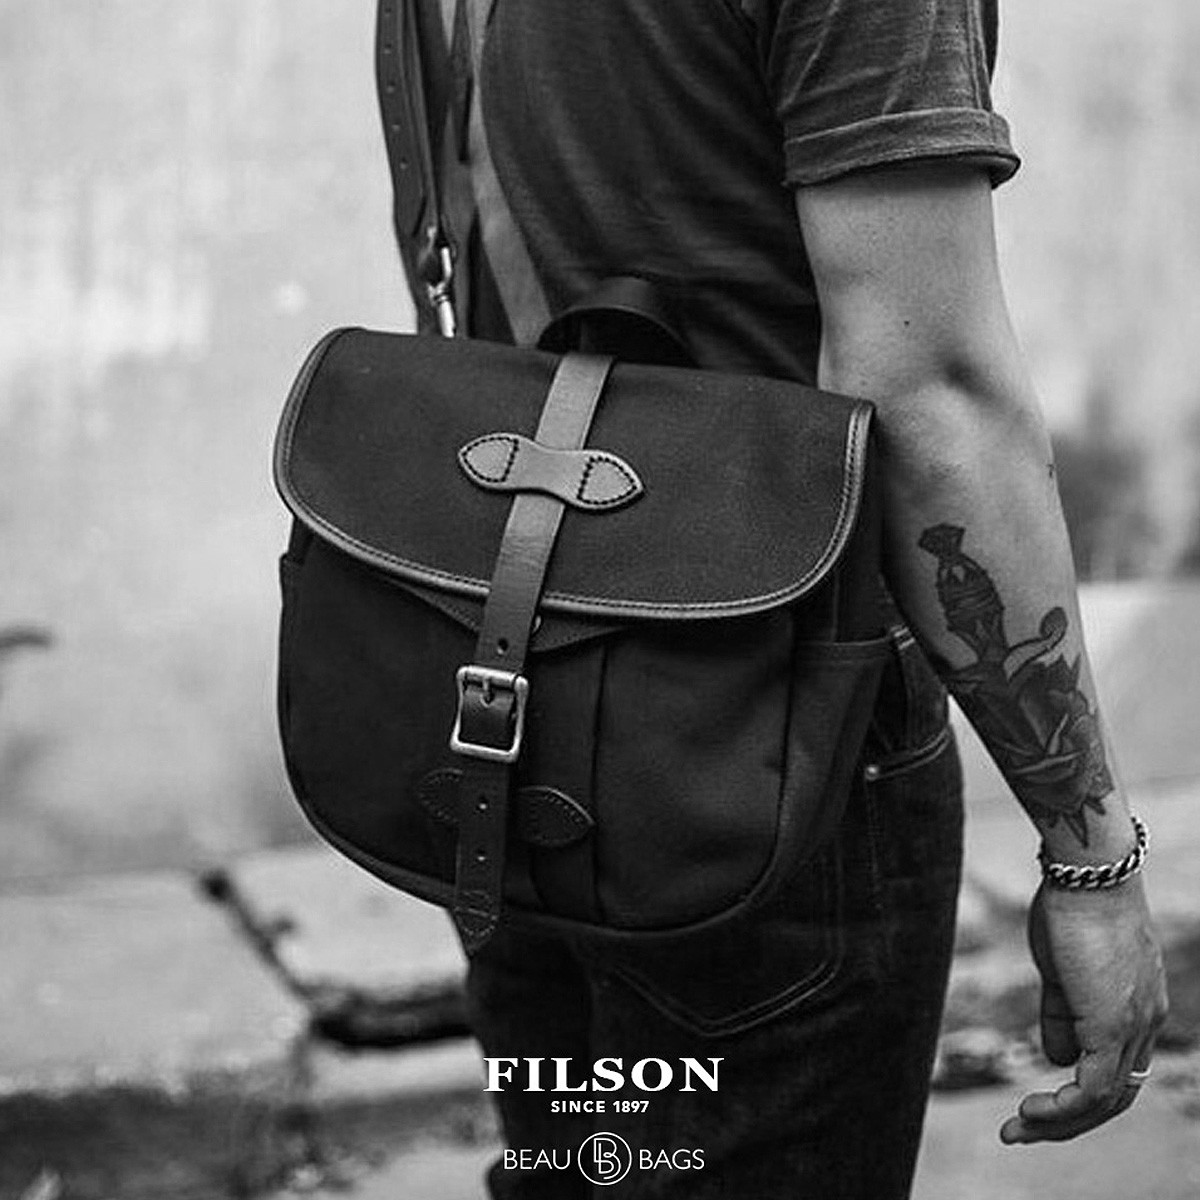 Filson Field Bag Small Black, gemaakt voor mannen en vrouwen die van stijl en kwaliteit houden